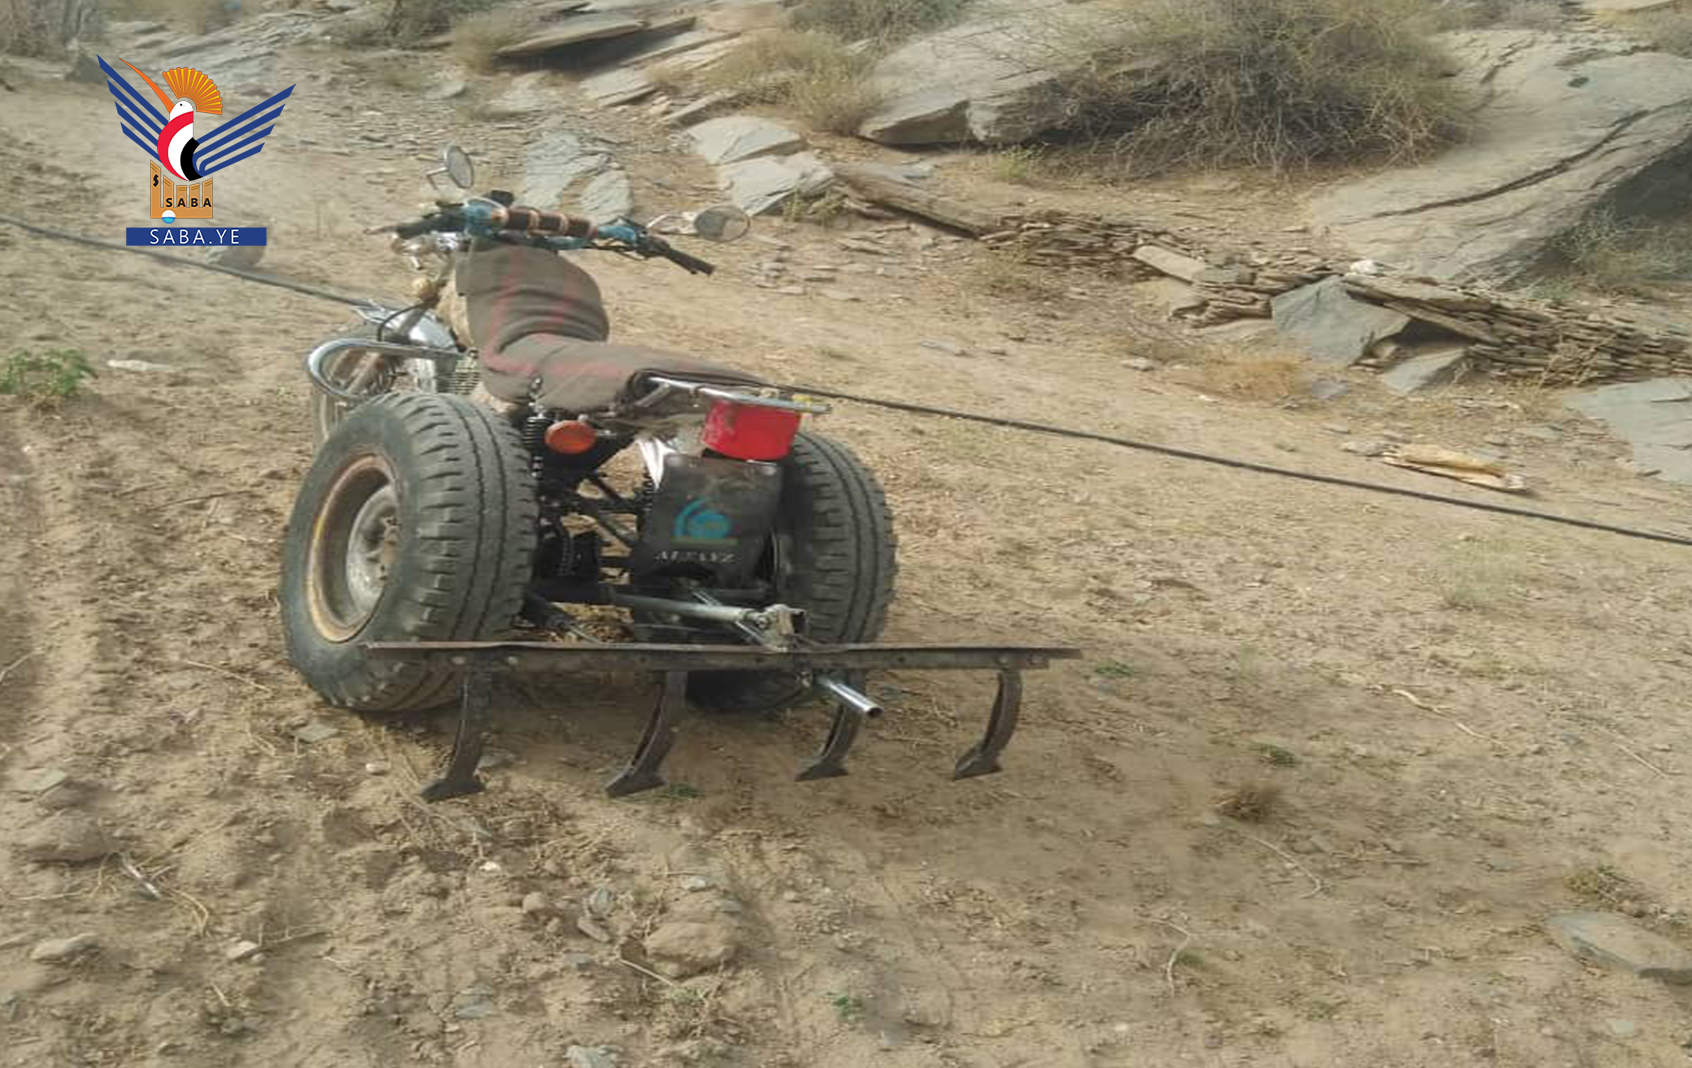 Les contrecoups de l'agression US-saoudienne et du siège poussent un paysan de Marib à transformer sa moto en charrue : rapport